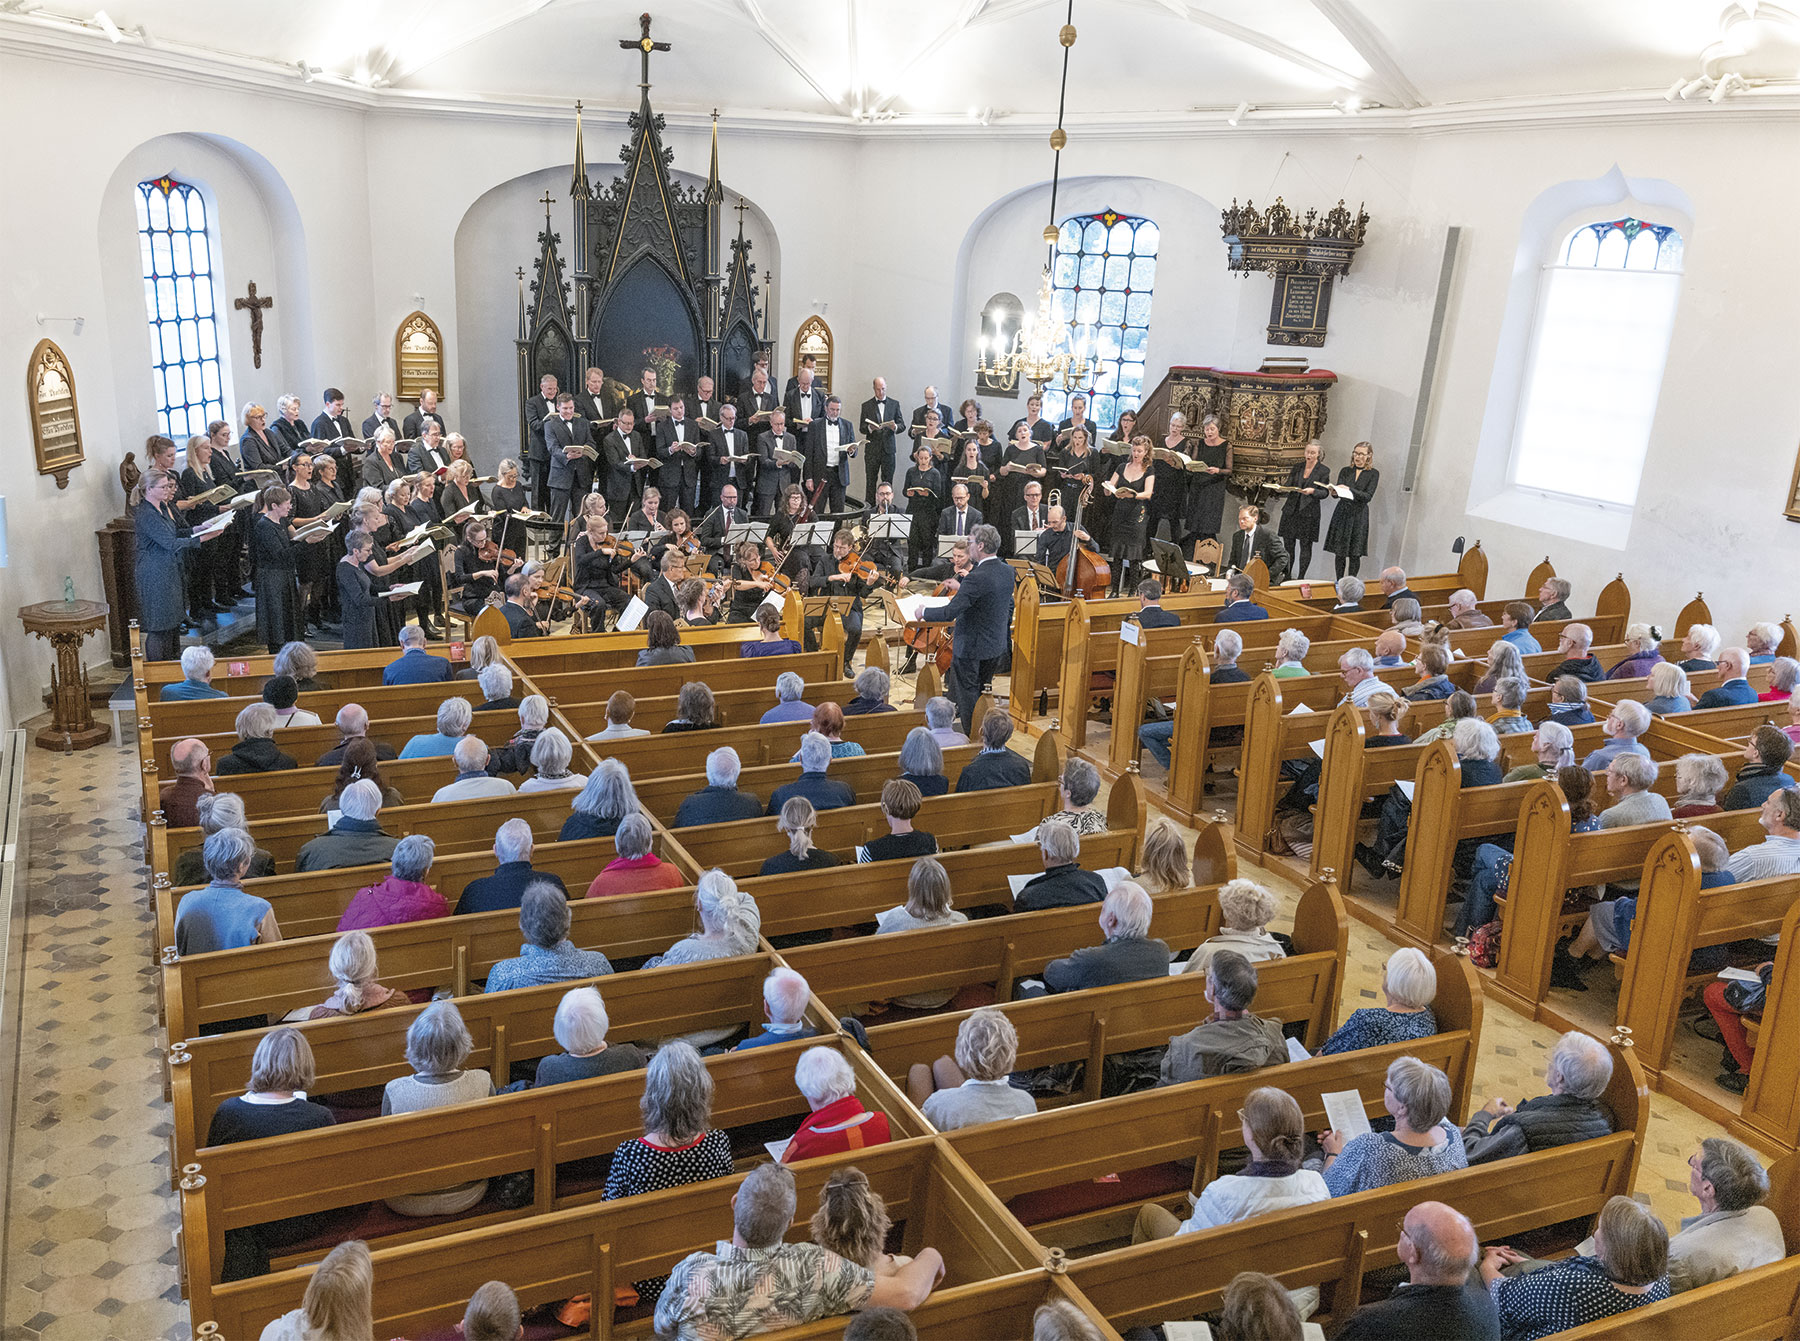 Det er en fyldt kirke, der nyder tonerne af Mendelssohns Elias. Foto: TorbenStender.